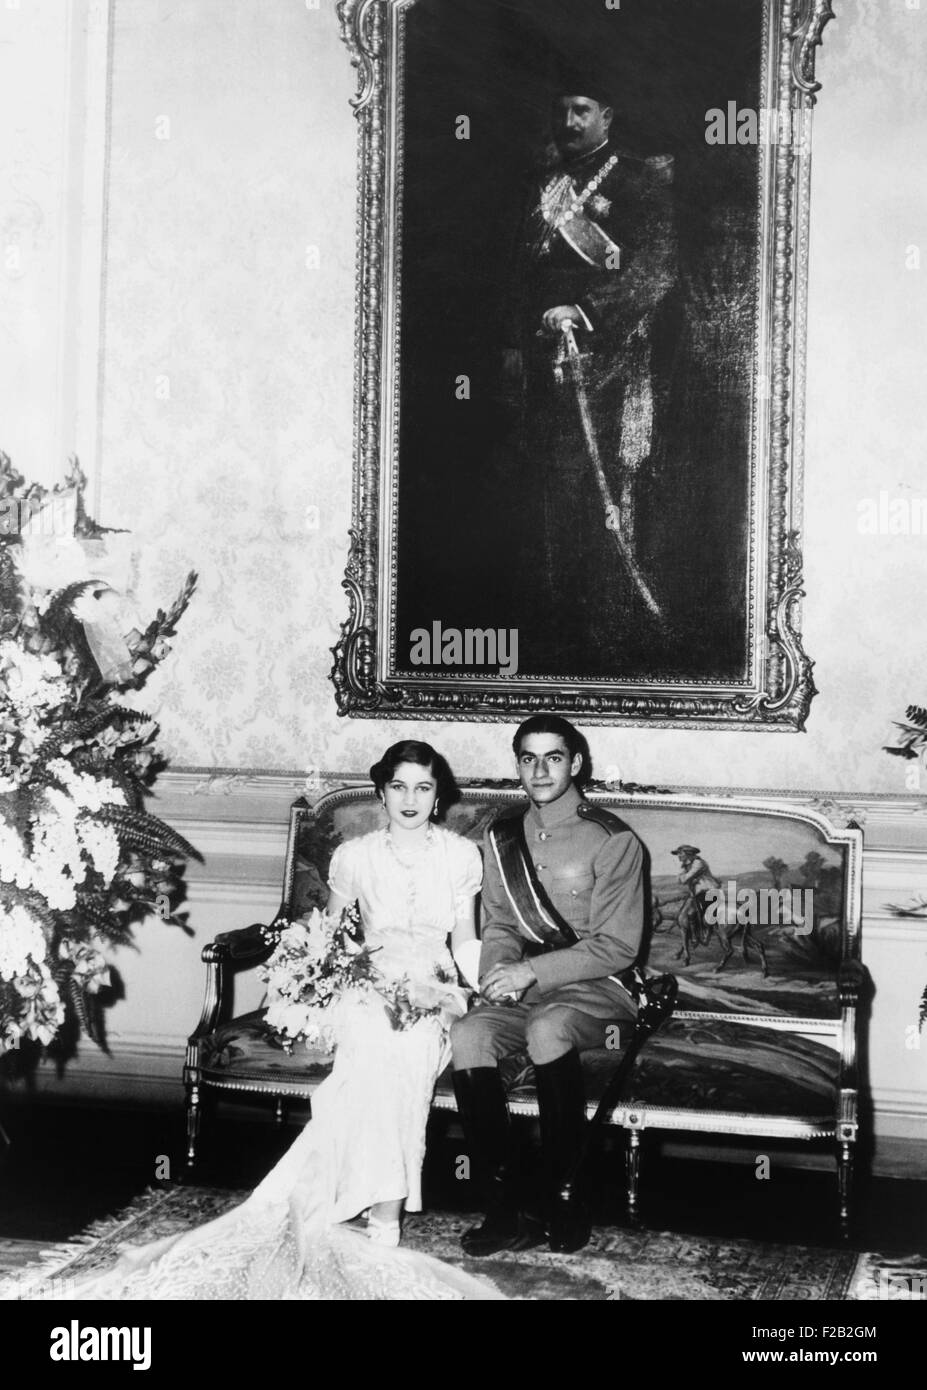 Kronprinz Mohammed Reza der Iran und seine ägyptische Braut, Prinzessin Fawzia. Sie ist die Schwester von König Farouk von Ägypten und der erste von drei Frauen den zukünftigen Schah von Persien. 30. März 1939. (CSU 2015 8 516) Stockfoto